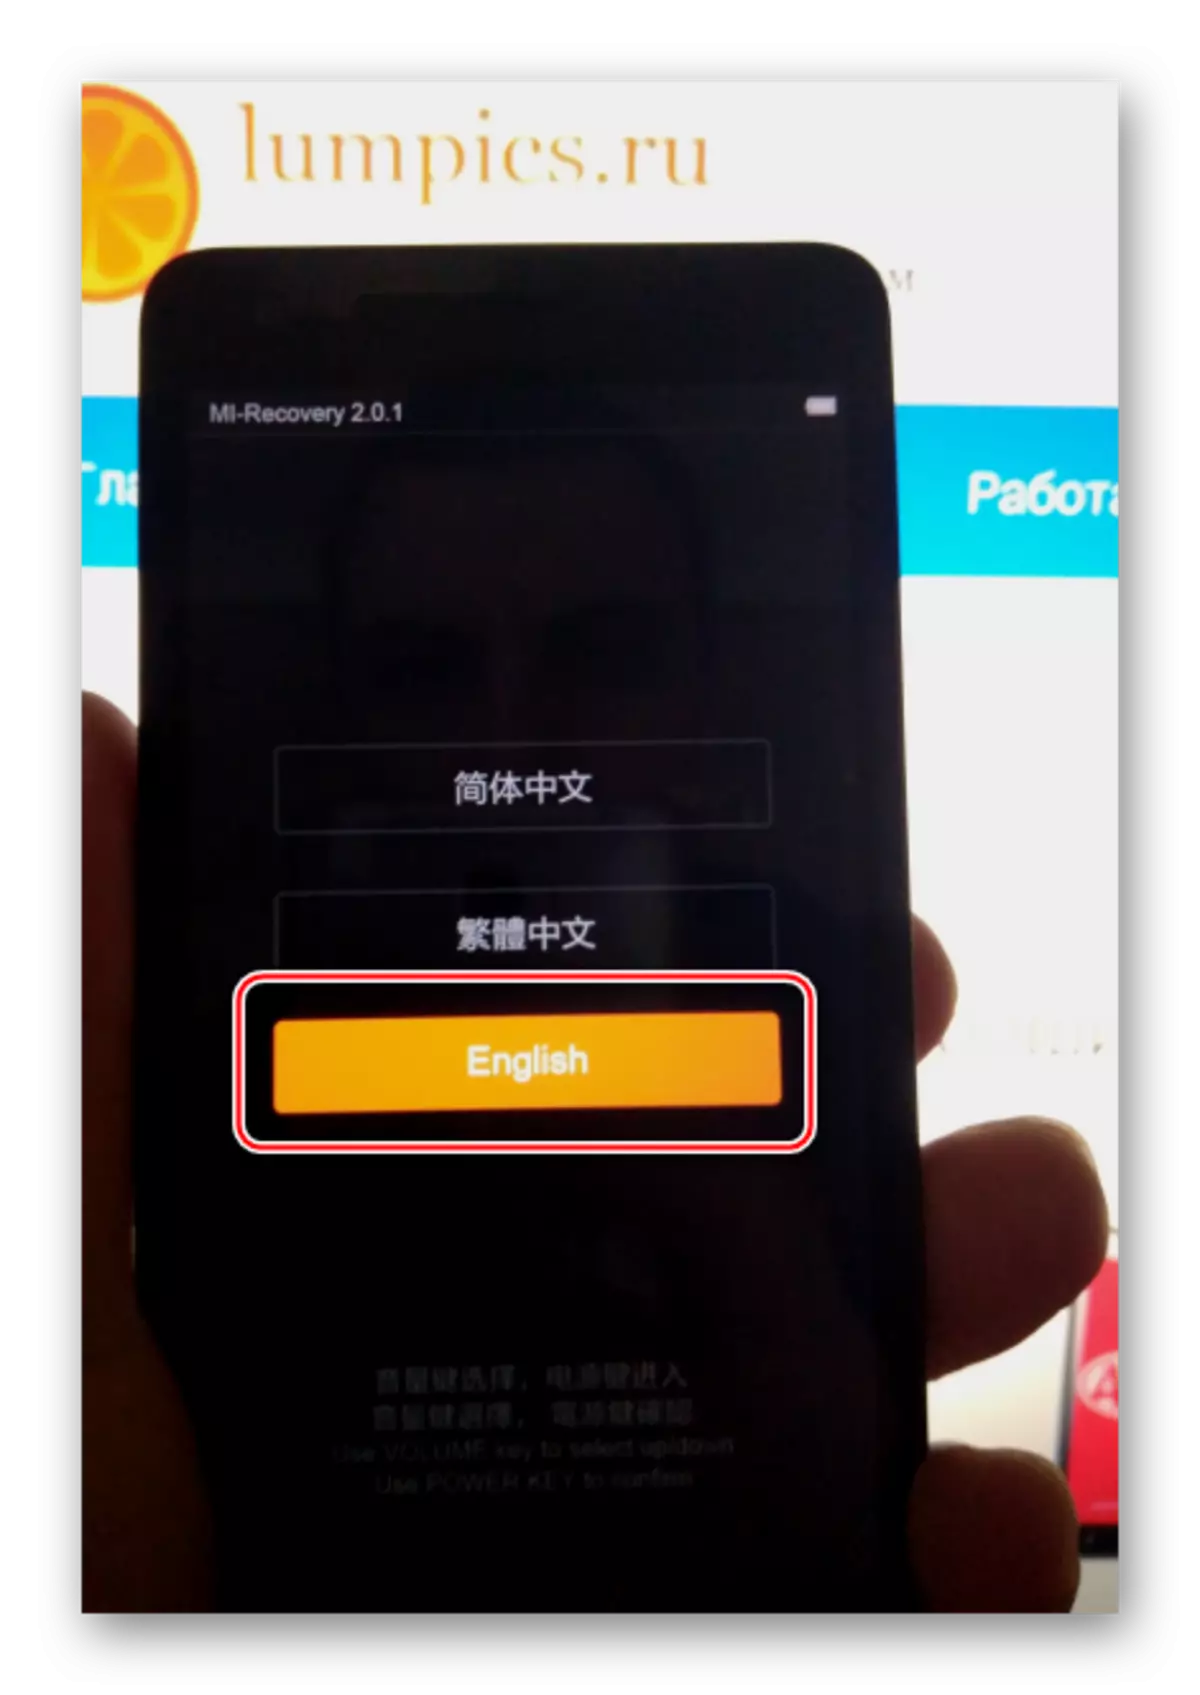 Xiaomi Redmi 2 switching Basa sahiji pabrik Pamulihan Interface